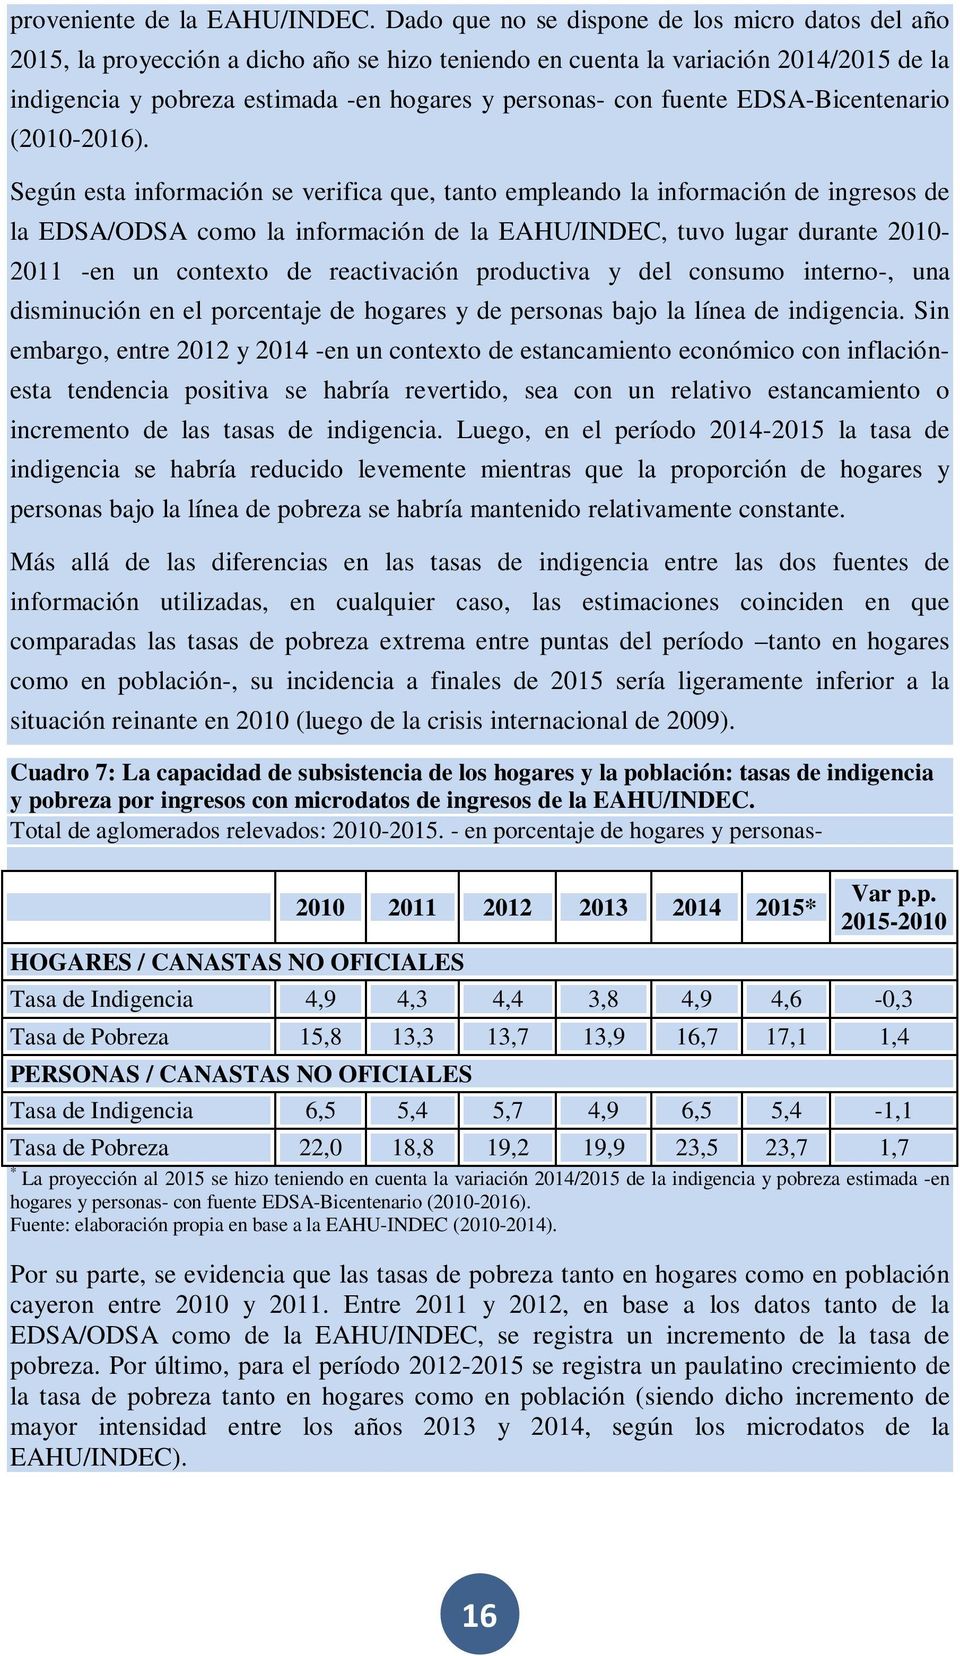 fuente EDSA-Bicentenario (2010-2016).